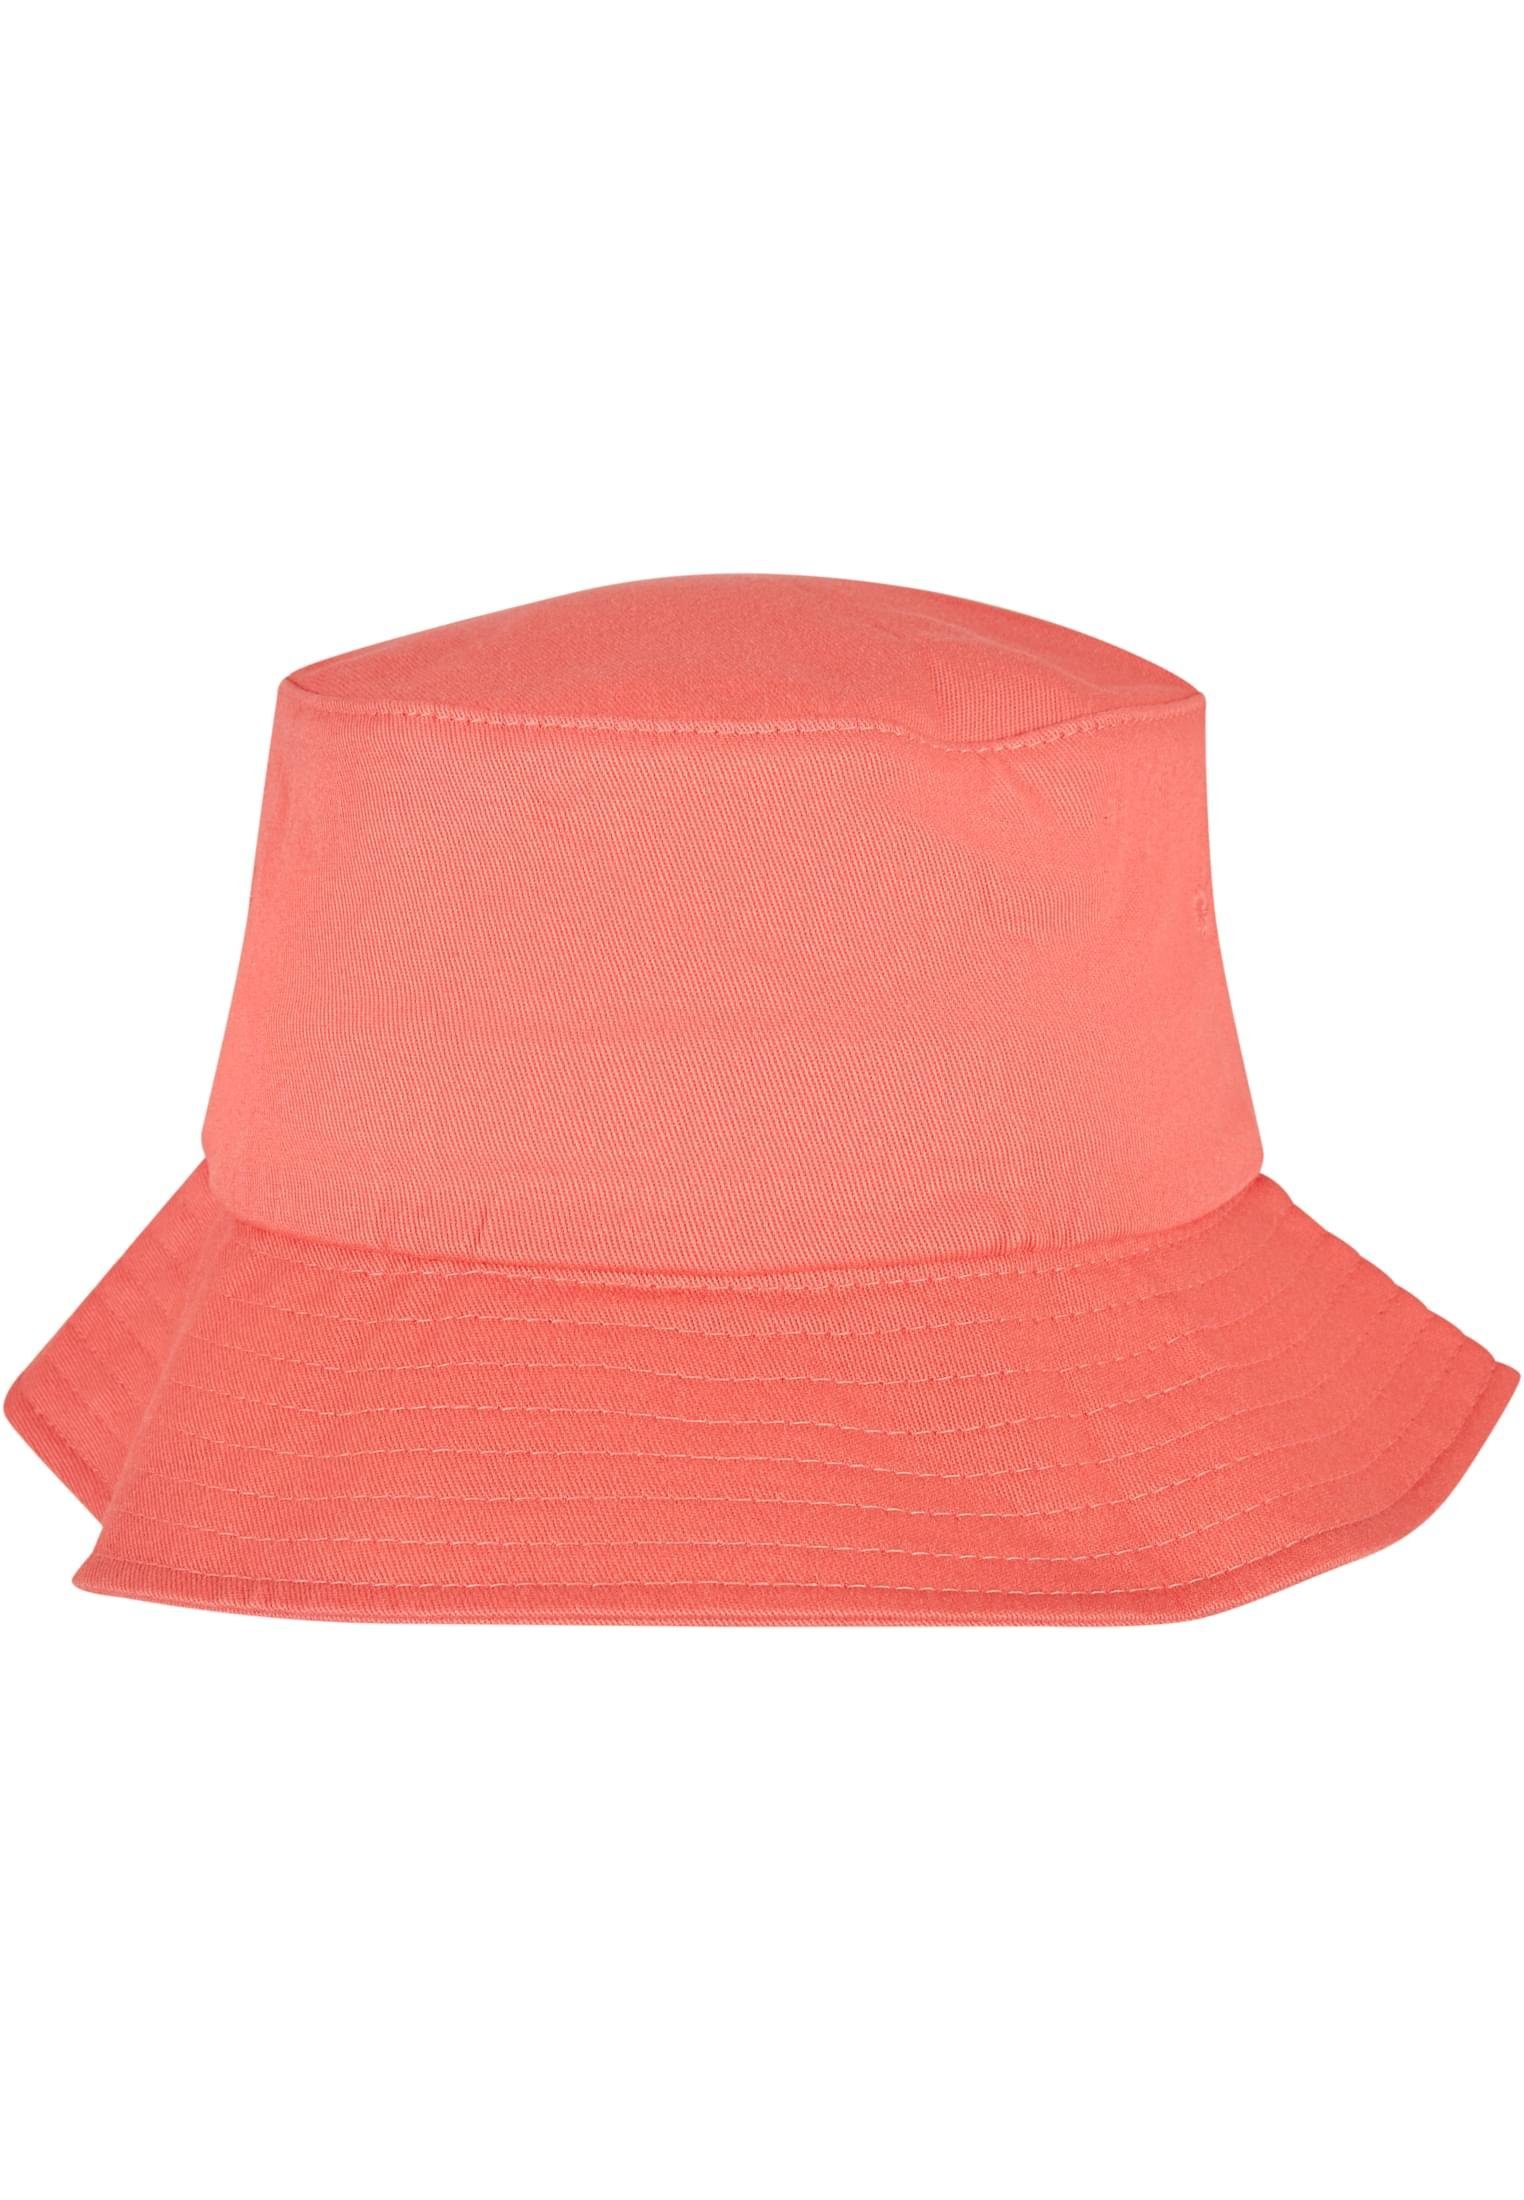 Twill Flex Hat Cap Cotton Flexfit Flexfit Accessoires spicedcoral Bucket